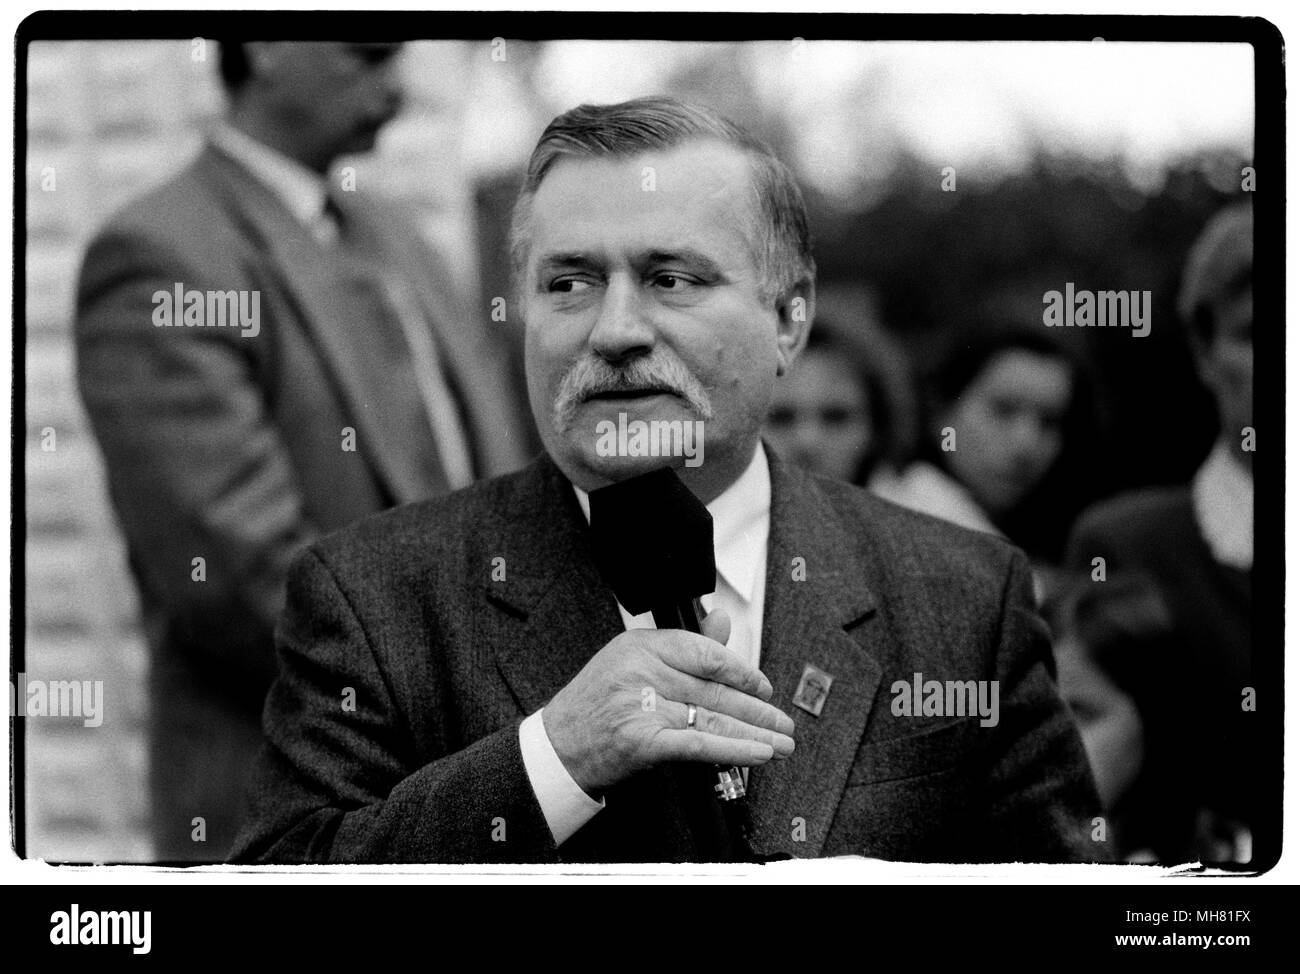 Lech Walesa über die Präsidentschaftswahlen Kampagne Trail in Dziemiany in Polen. November 1995 Lech Wałęsa, 29. September 1943) ist ein ehemaliger polnischer Politiker und Aktivist. Er gründete und leitete Solidarität (Solidarność), der ersten unabhängigen Gewerkschaft im Ostblock, der Nobelpreis für den Frieden 1983 gewann, und diente als Präsident von Polen von 1990 bis 1995.[3] Während der Arbeit an der Lenin Werft (jetzt Danziger Werft), Wałęsa, Elektriker, wurde eine gewerkschaftliche Aktivisten, für die er von den kommunistischen Behörden verfolgt wurde, unter Überwachung gestellt, 1976 abgefeuert, und mehrere Tim verhaftet Stockfoto